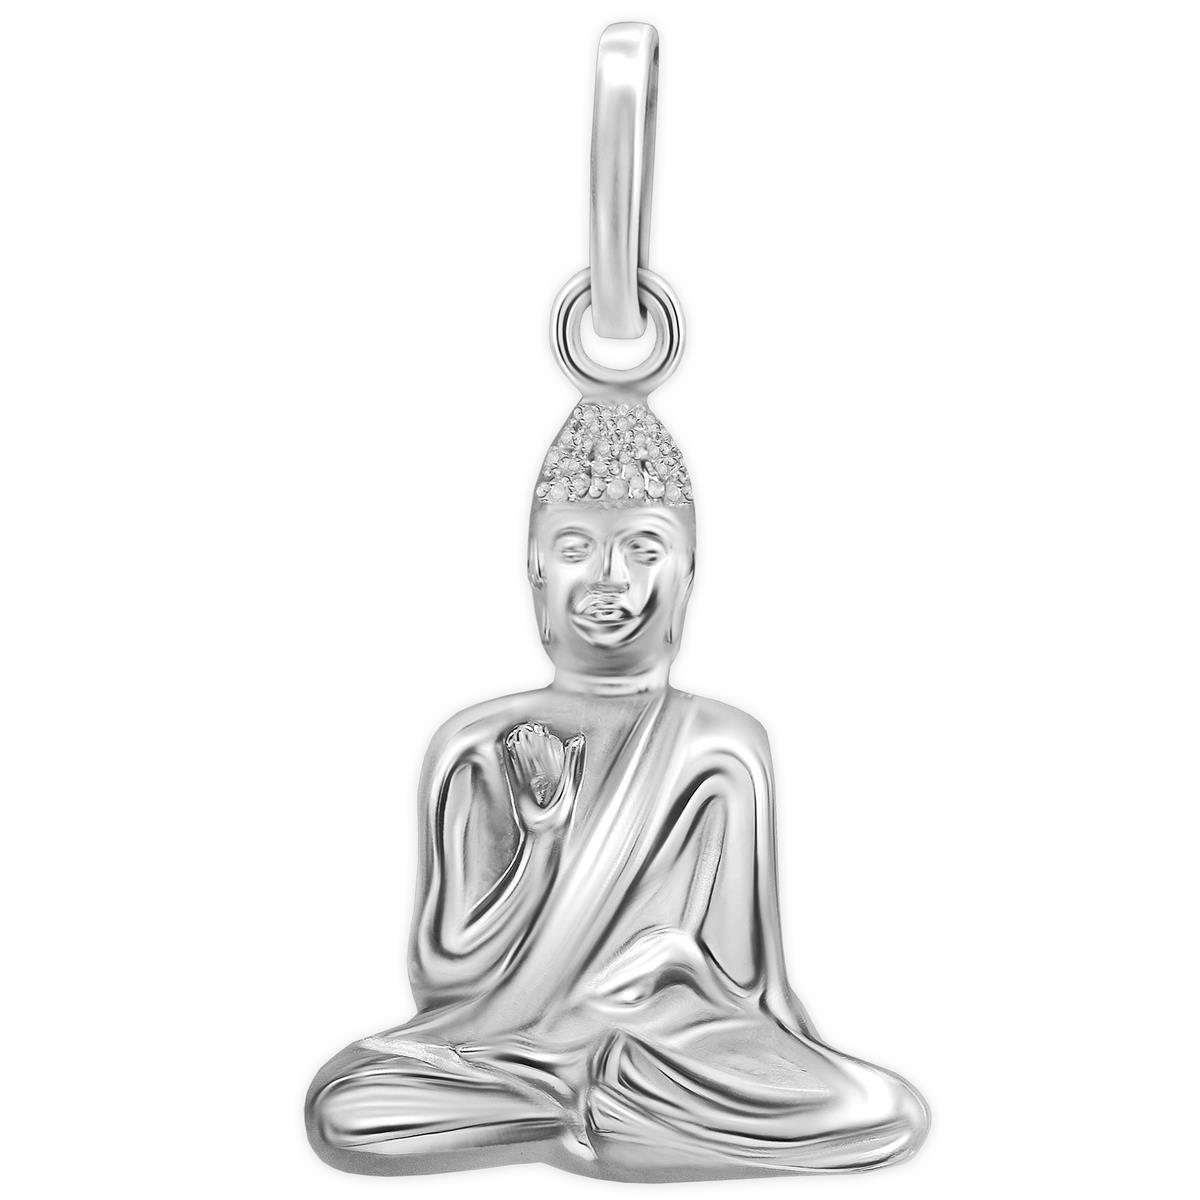 Silberner Anhänger Kleiner Buddha schmal sitzend hochglänzend poliert Sterling Silber 925